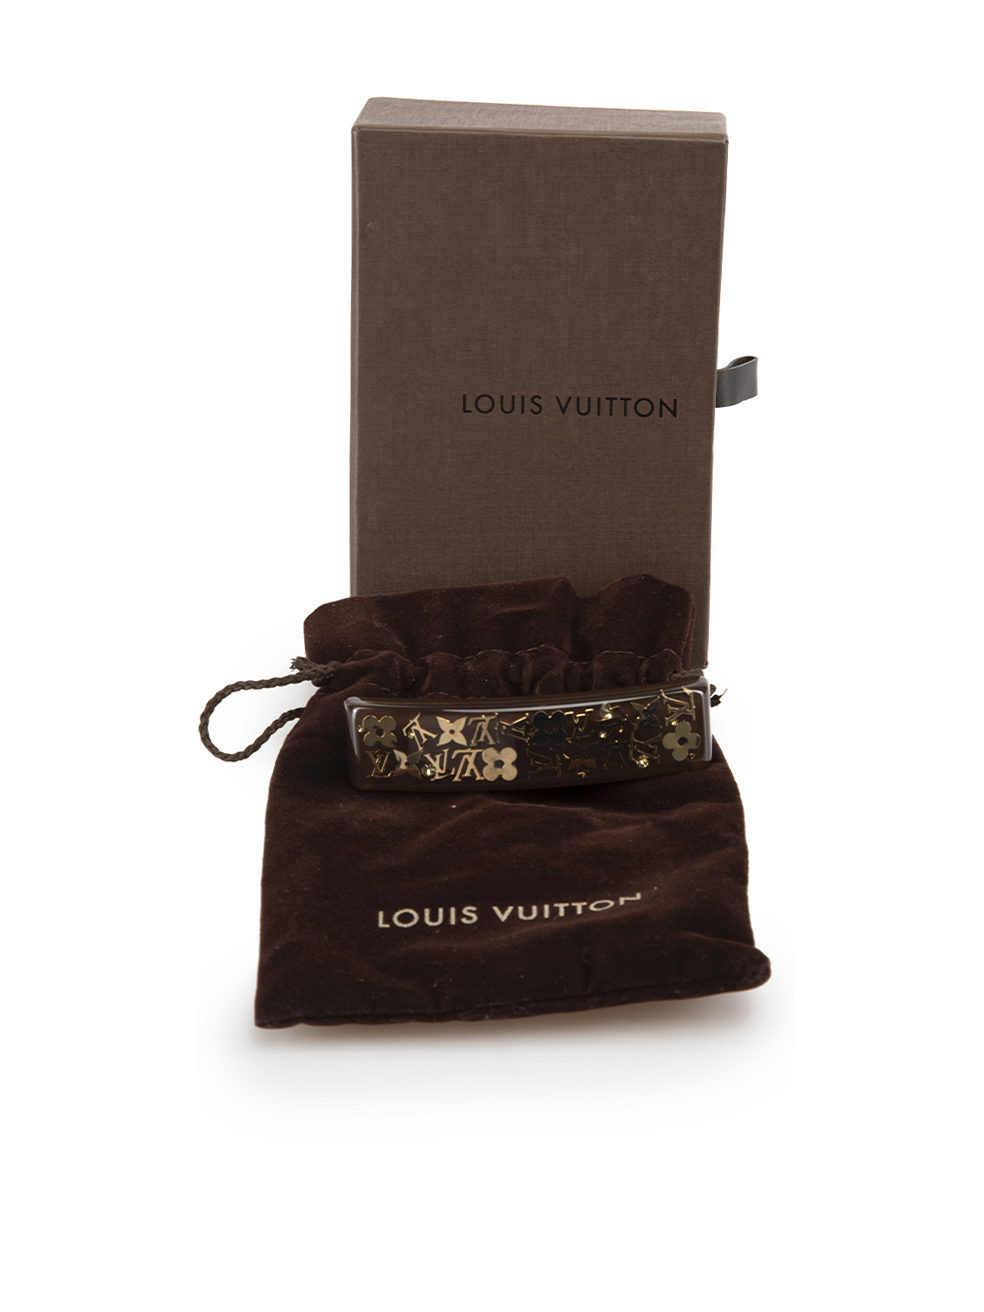 Authentic Louis Vuitton Barrette Monogram - clothing & accessories